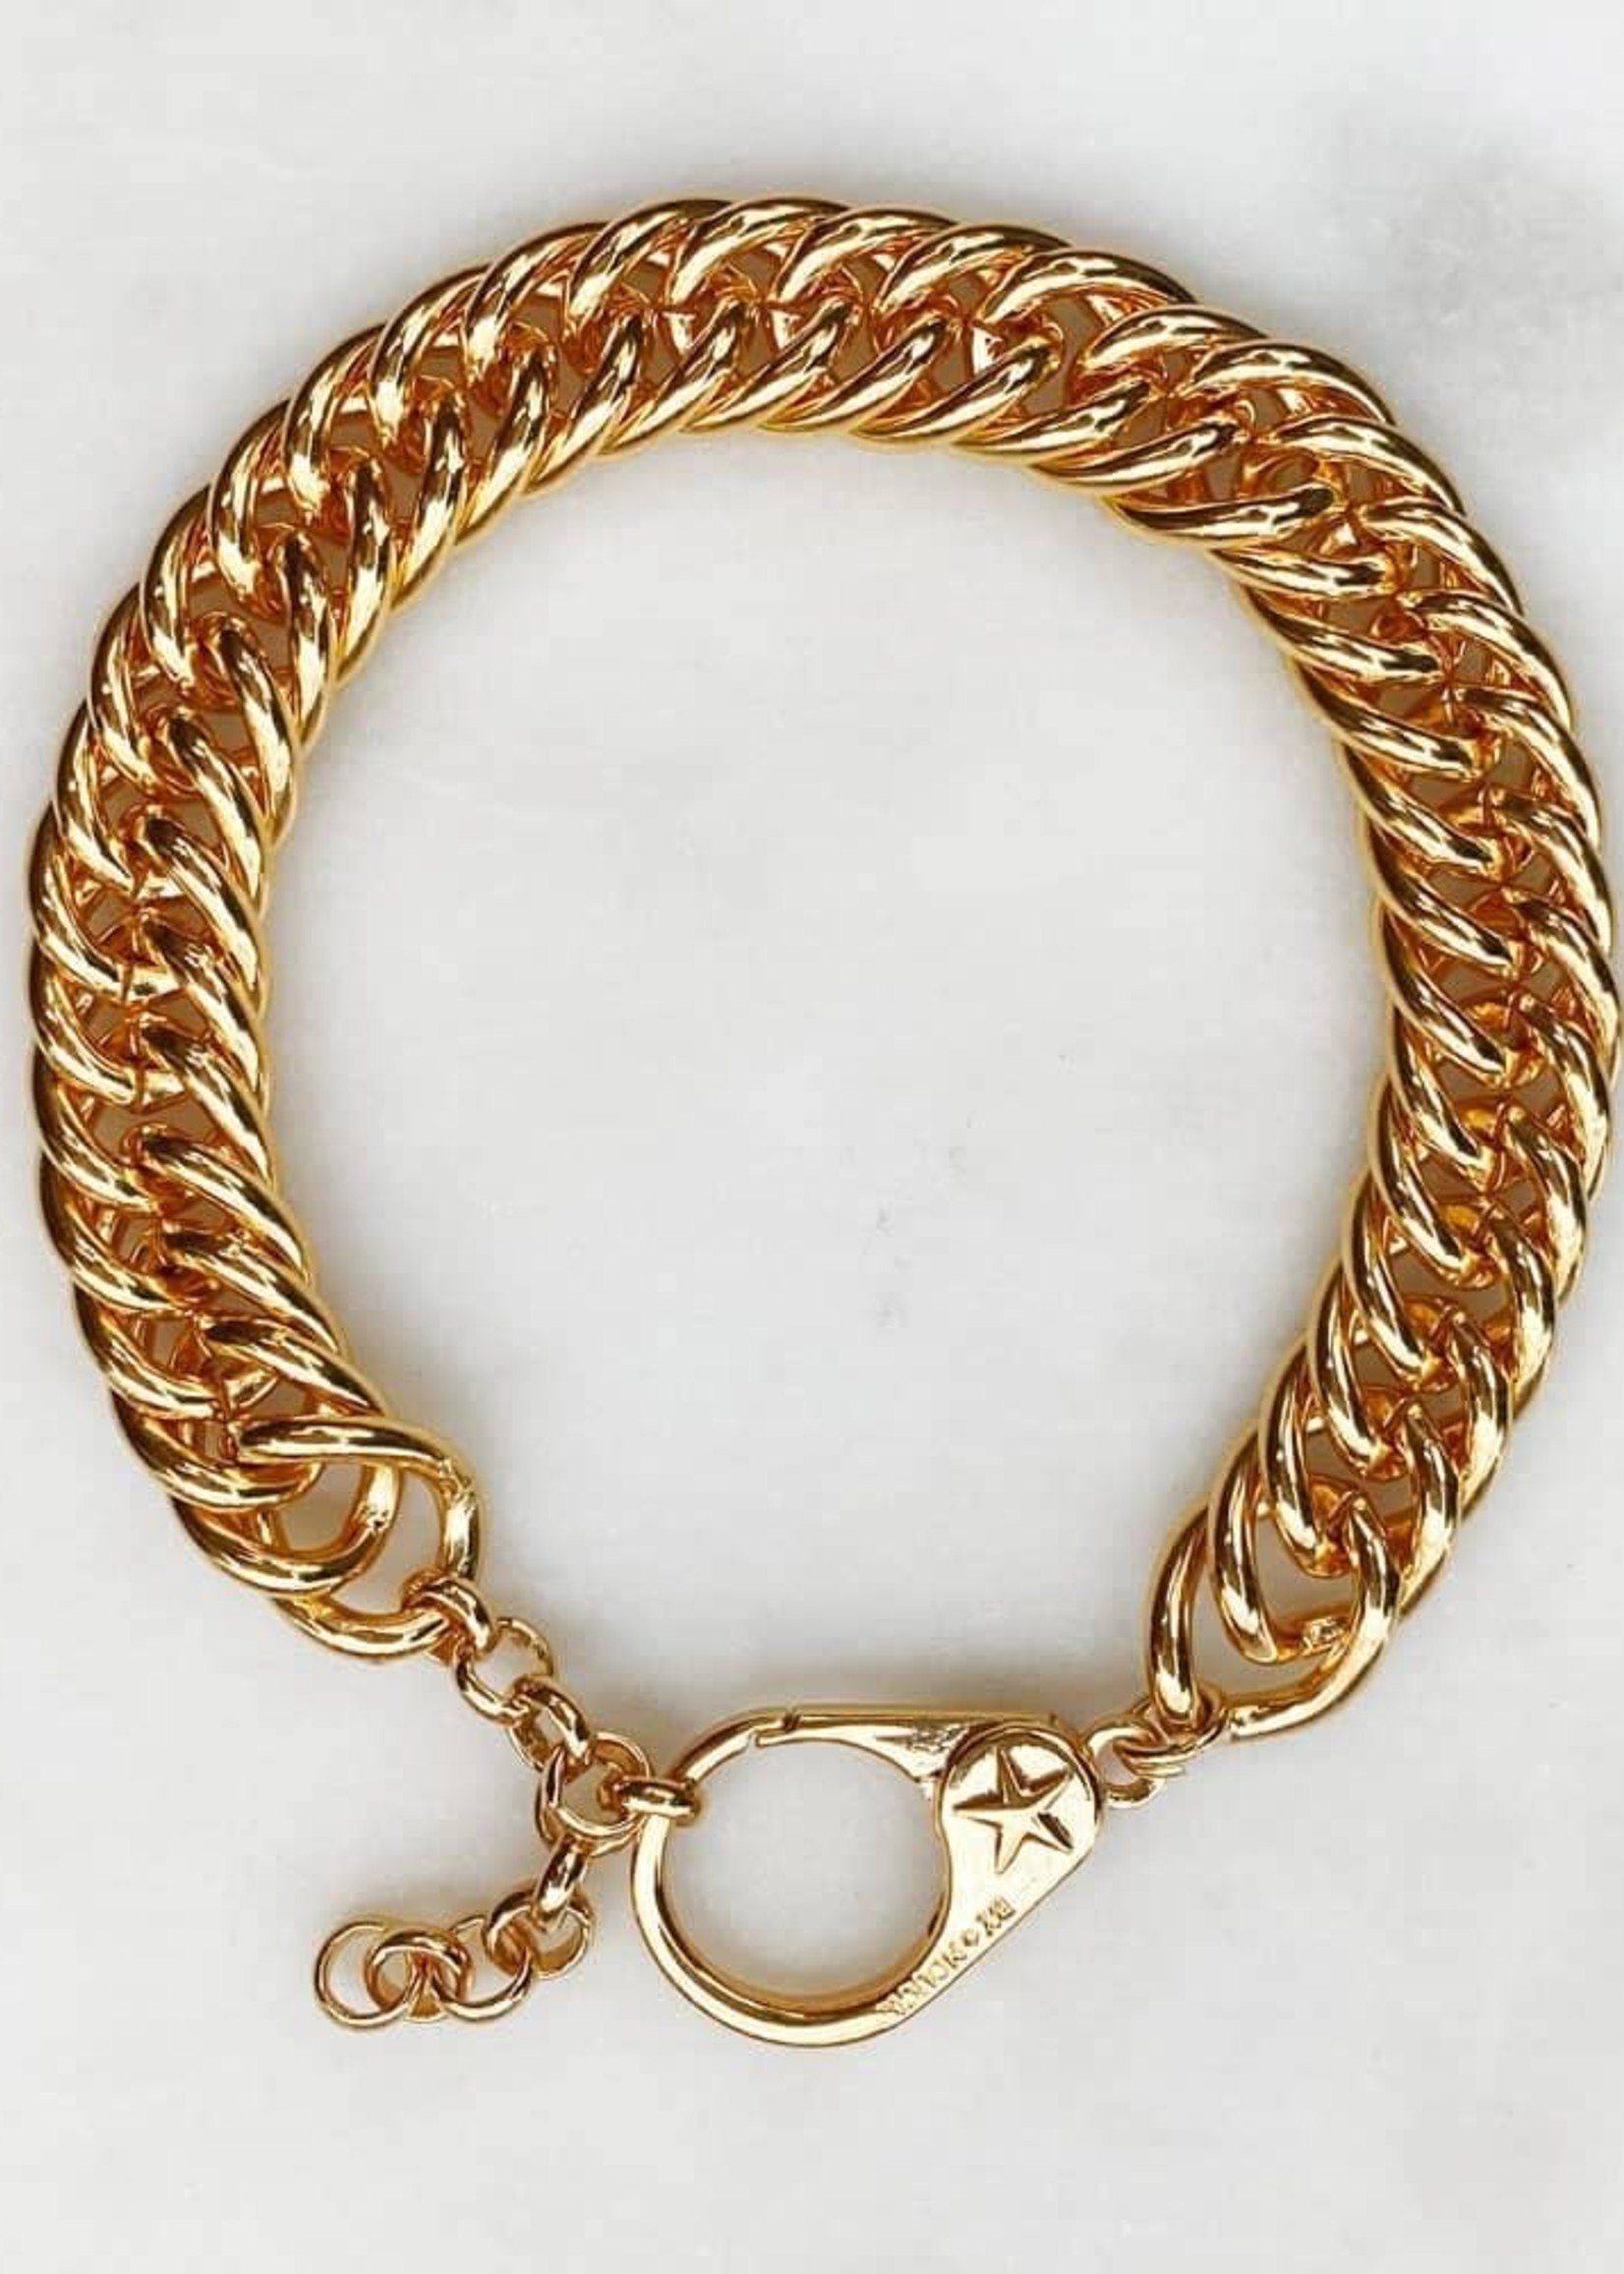 ByNouck Jewelry ByNouck Jewelry - Big Chain Bracelet Clasp - Gold